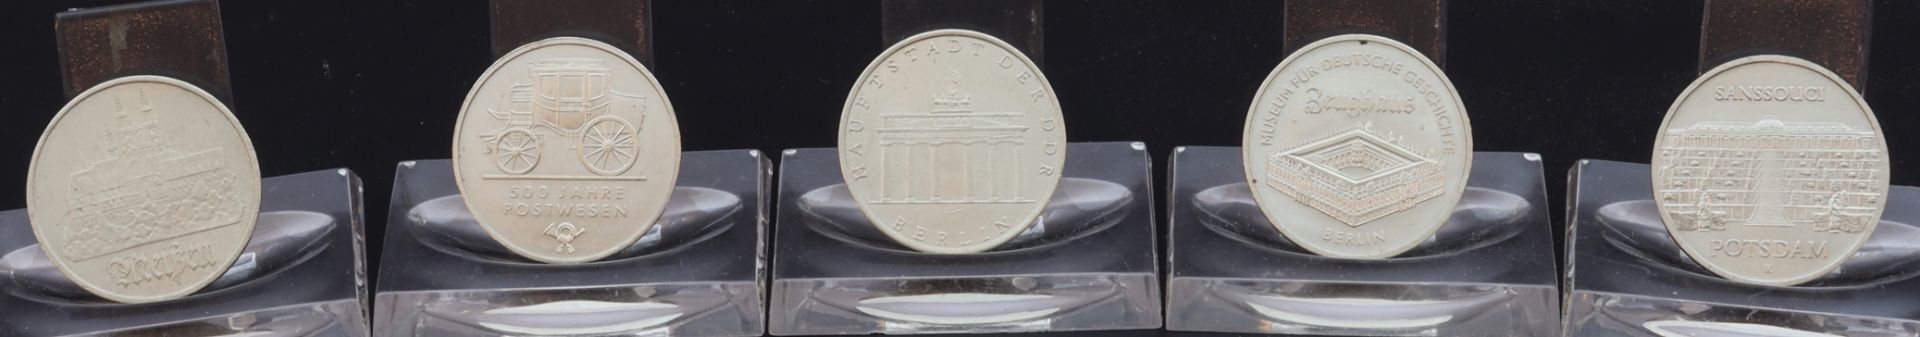 Lot von 5 DDR Münzen - 5 Mark der DDR